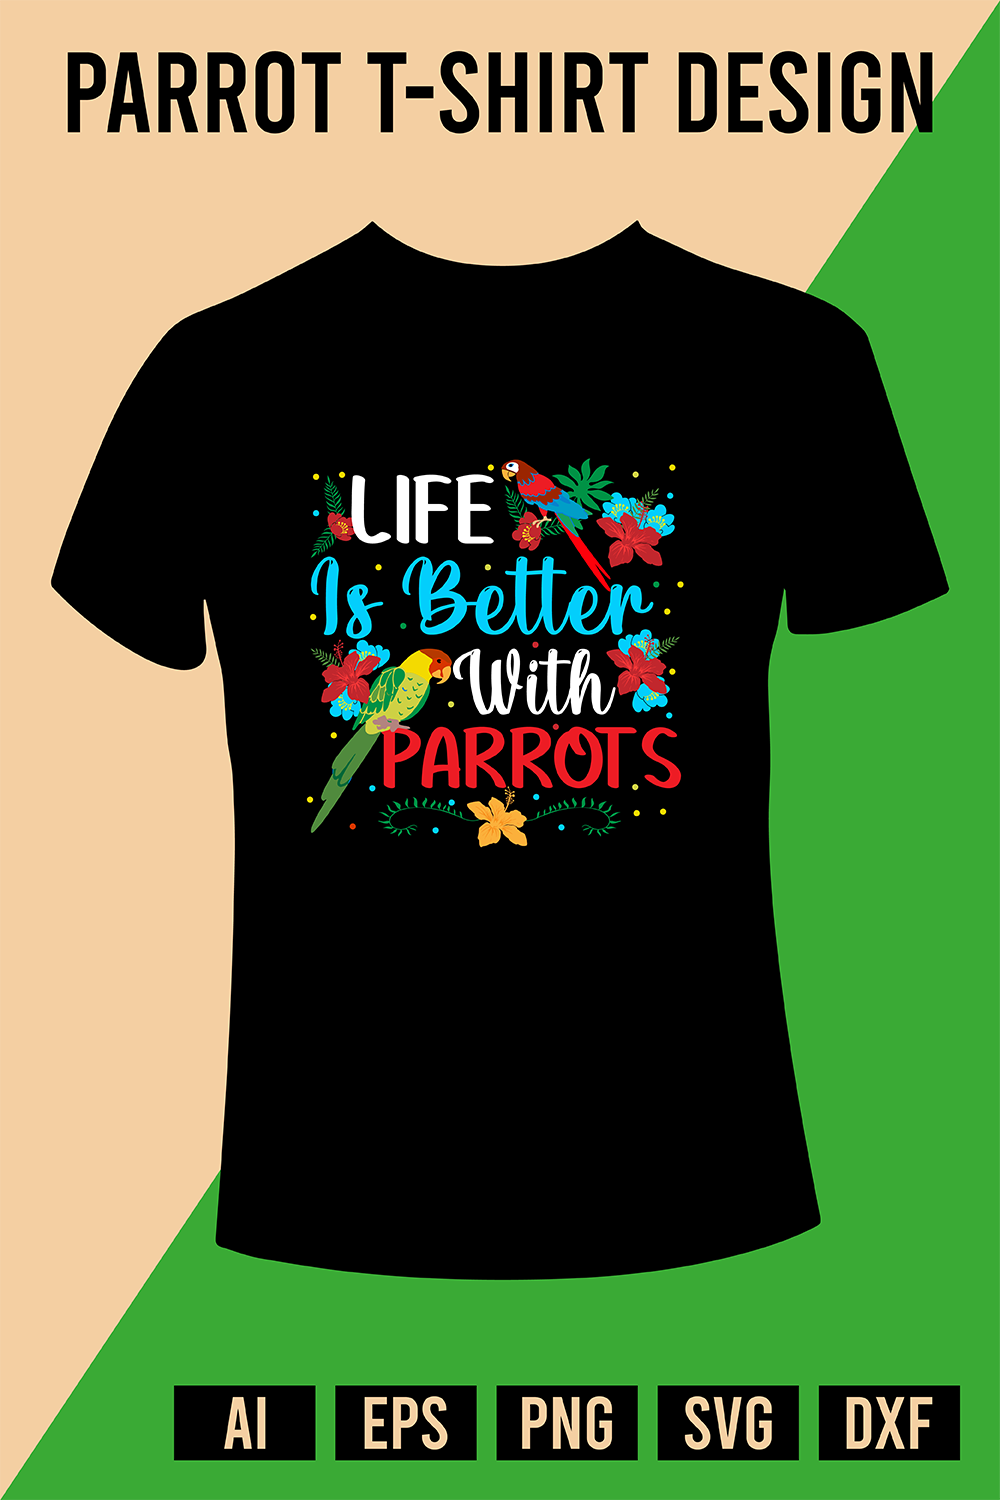 Parrot T-Shirt Design pinterest preview image.